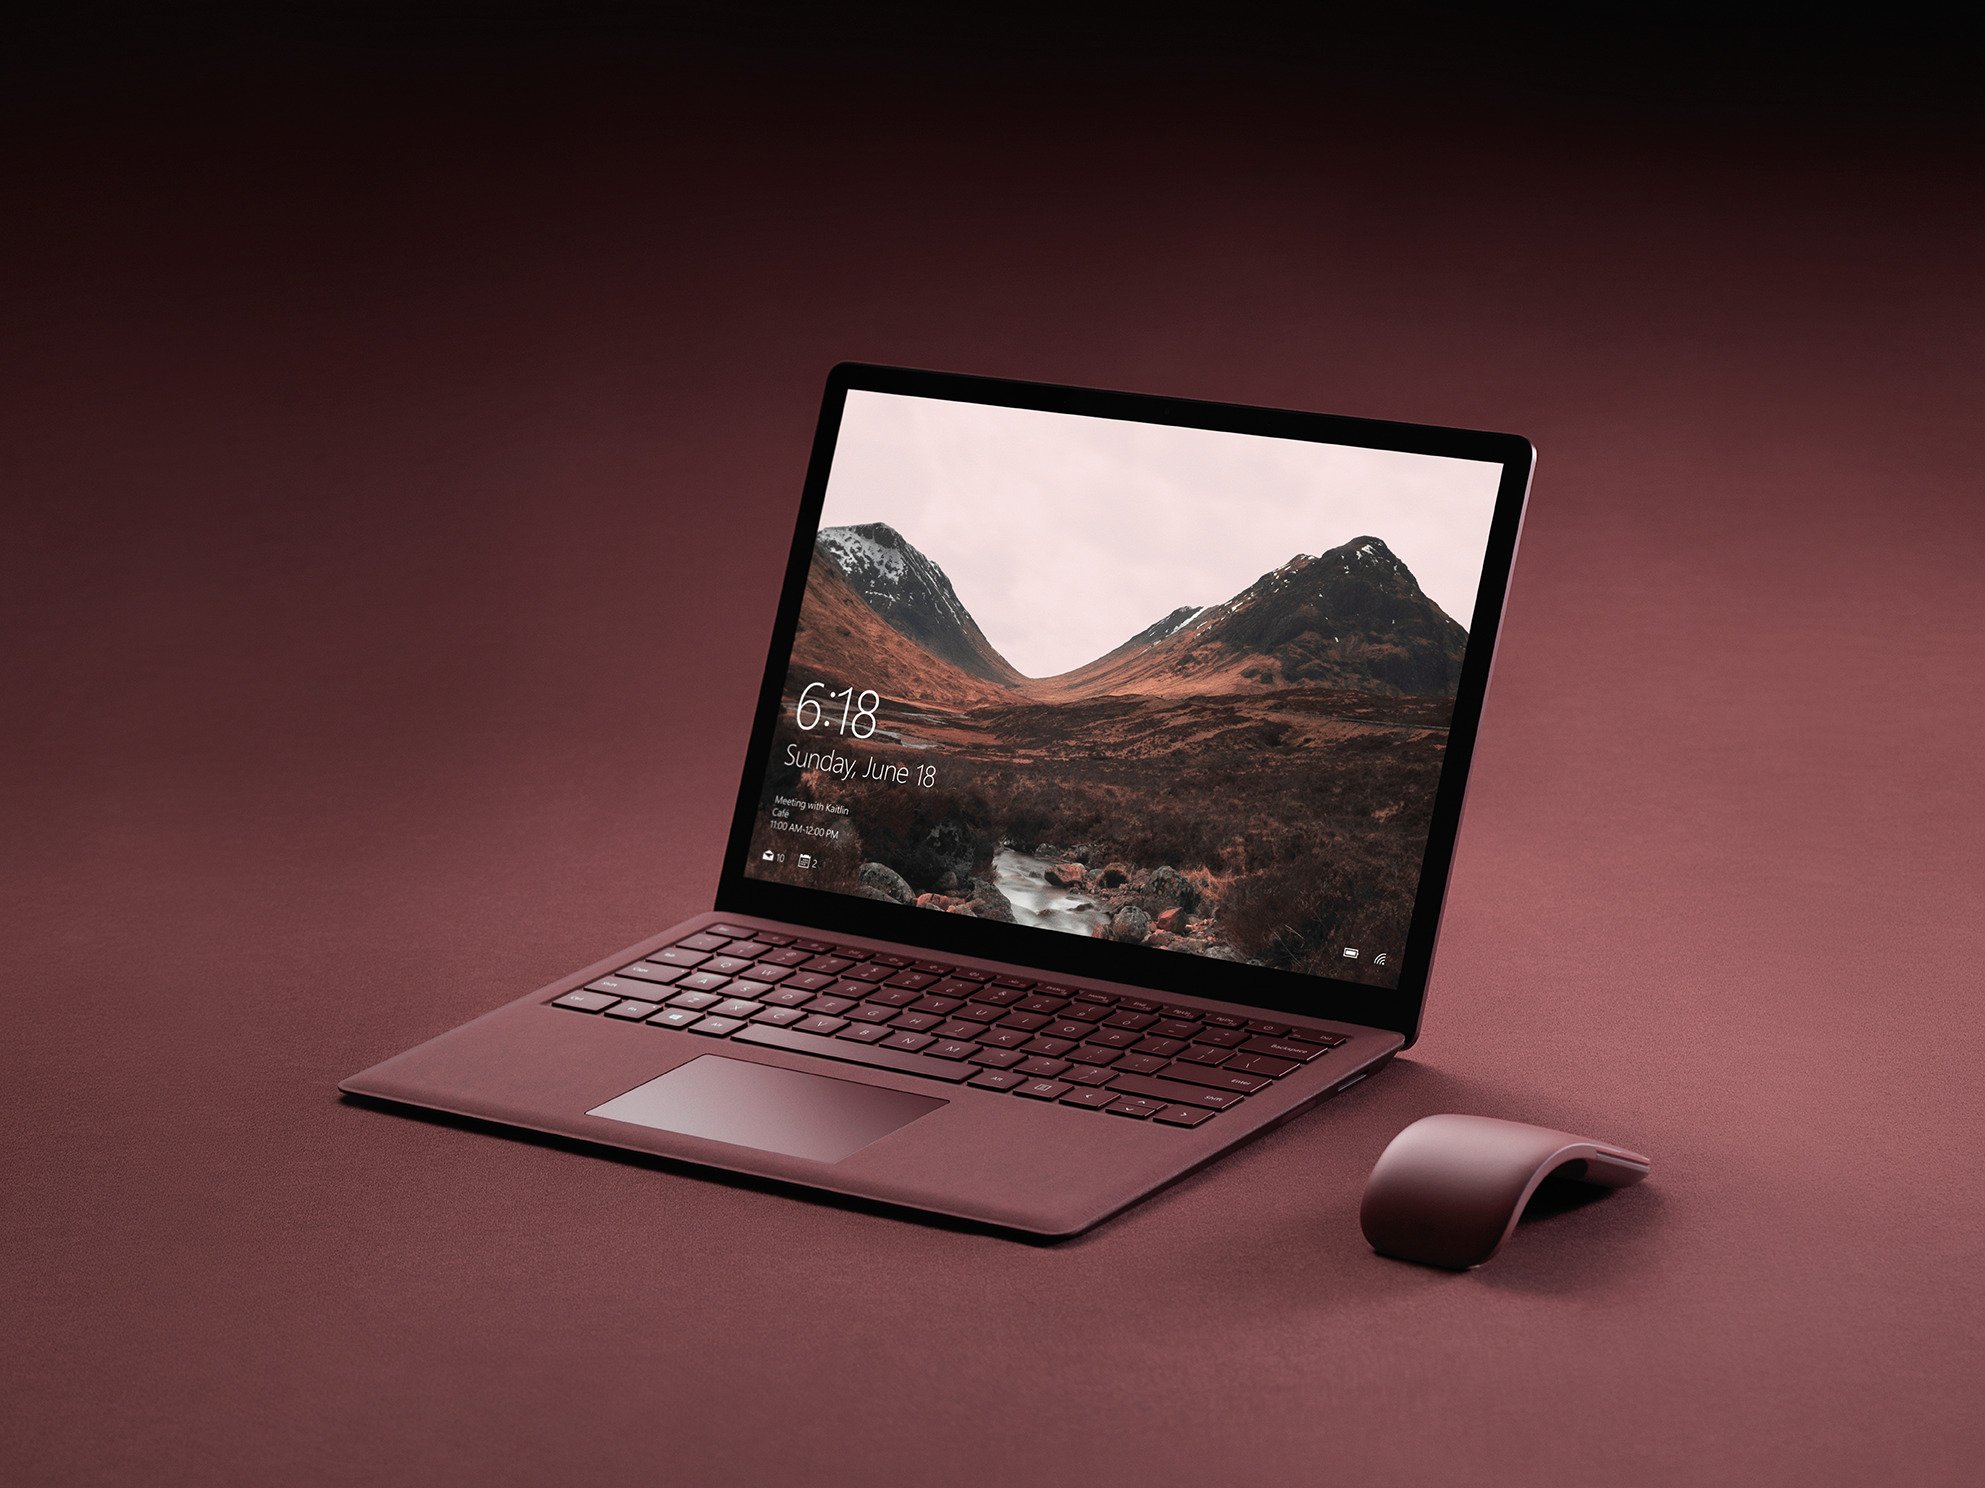 ｢Surface｣ブランドの新型ノートPC、発表を前により多くの画像が流出